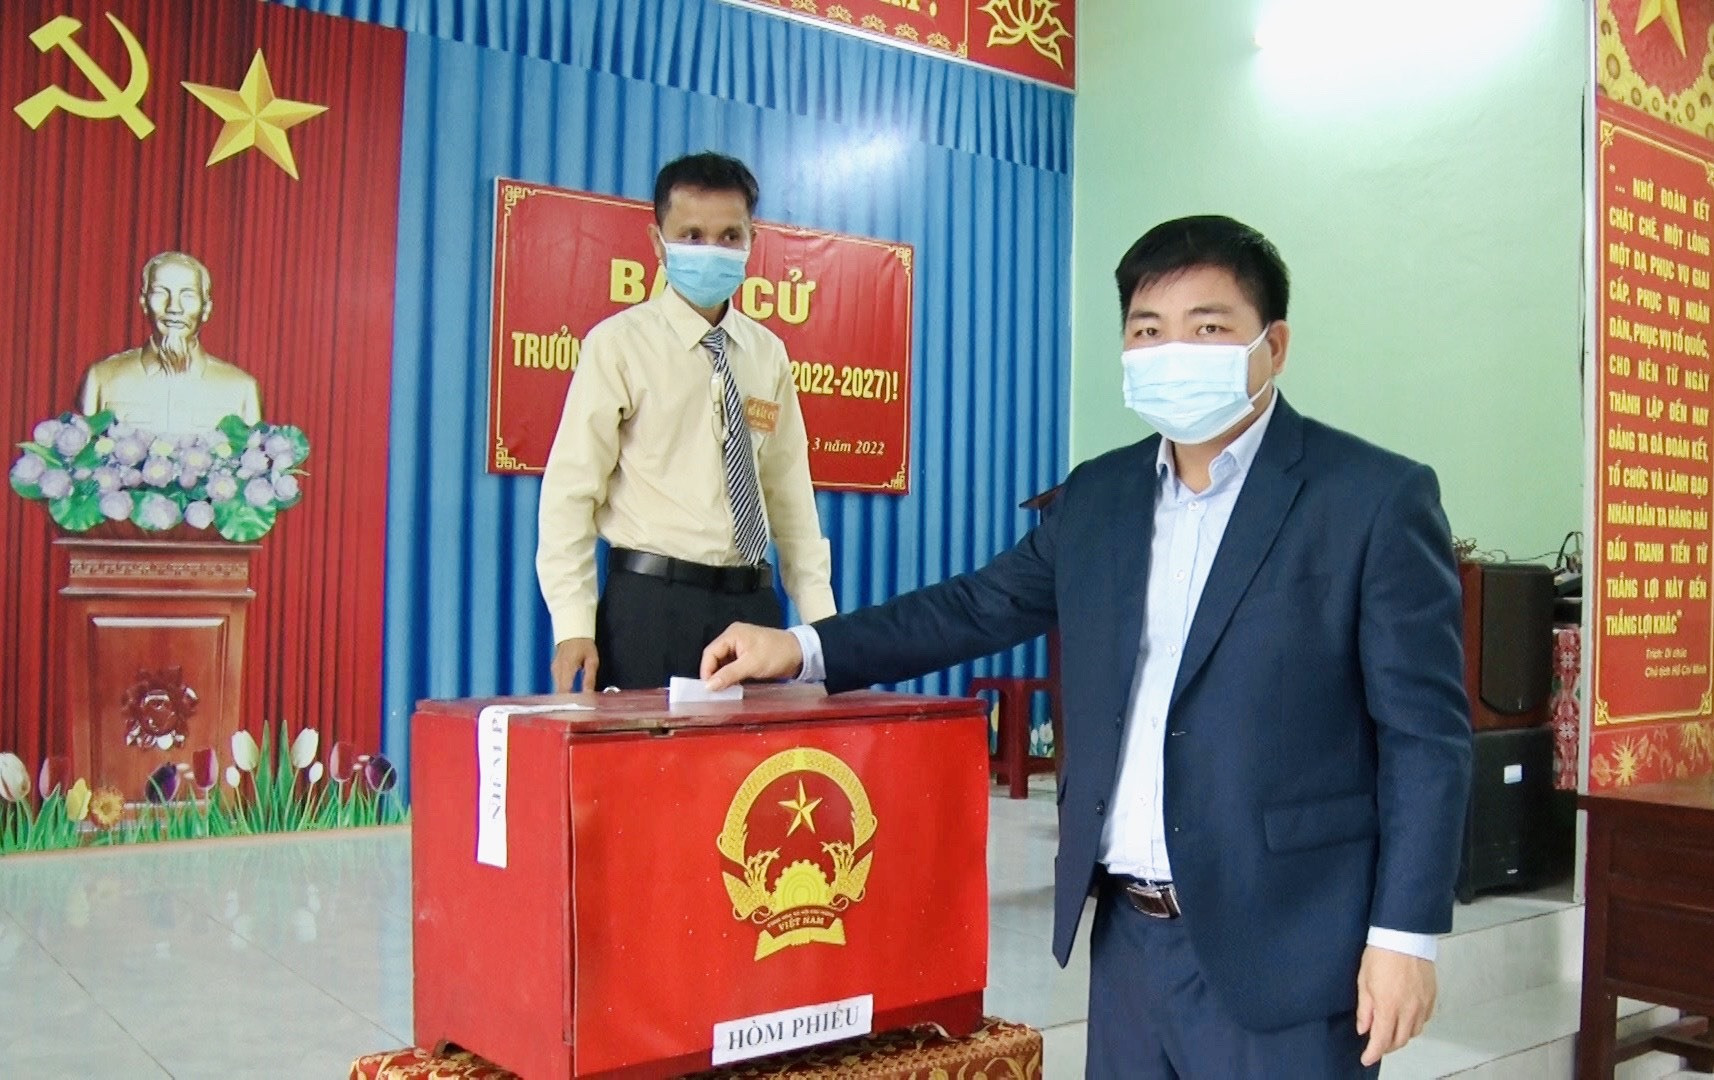 Chủ tịch UBND huyện Nông Sơn - Nguyễn Văn Hòa bỏ phiếu bầu cử trưởng thôn tại điểm bầu cử thôn Trung Hạ (Quế Trung, Nông Sơn). Ảnh: TÂM LÊ